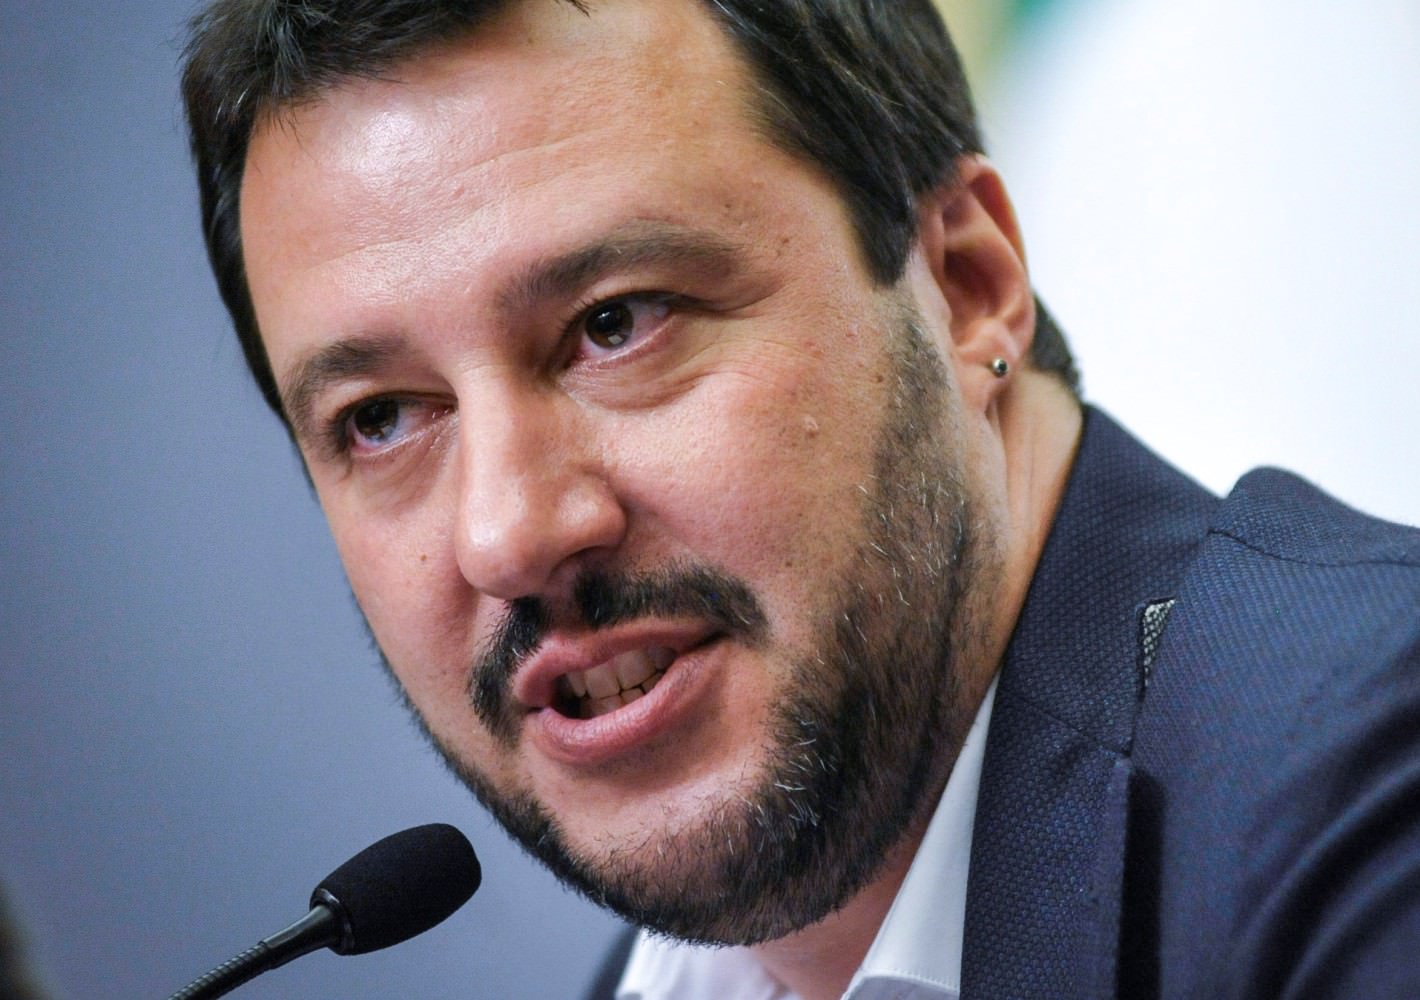 Il Sindaco di Stazzema a Matteo Salvini “Con le Sue parole offende le vittime delle guerre”